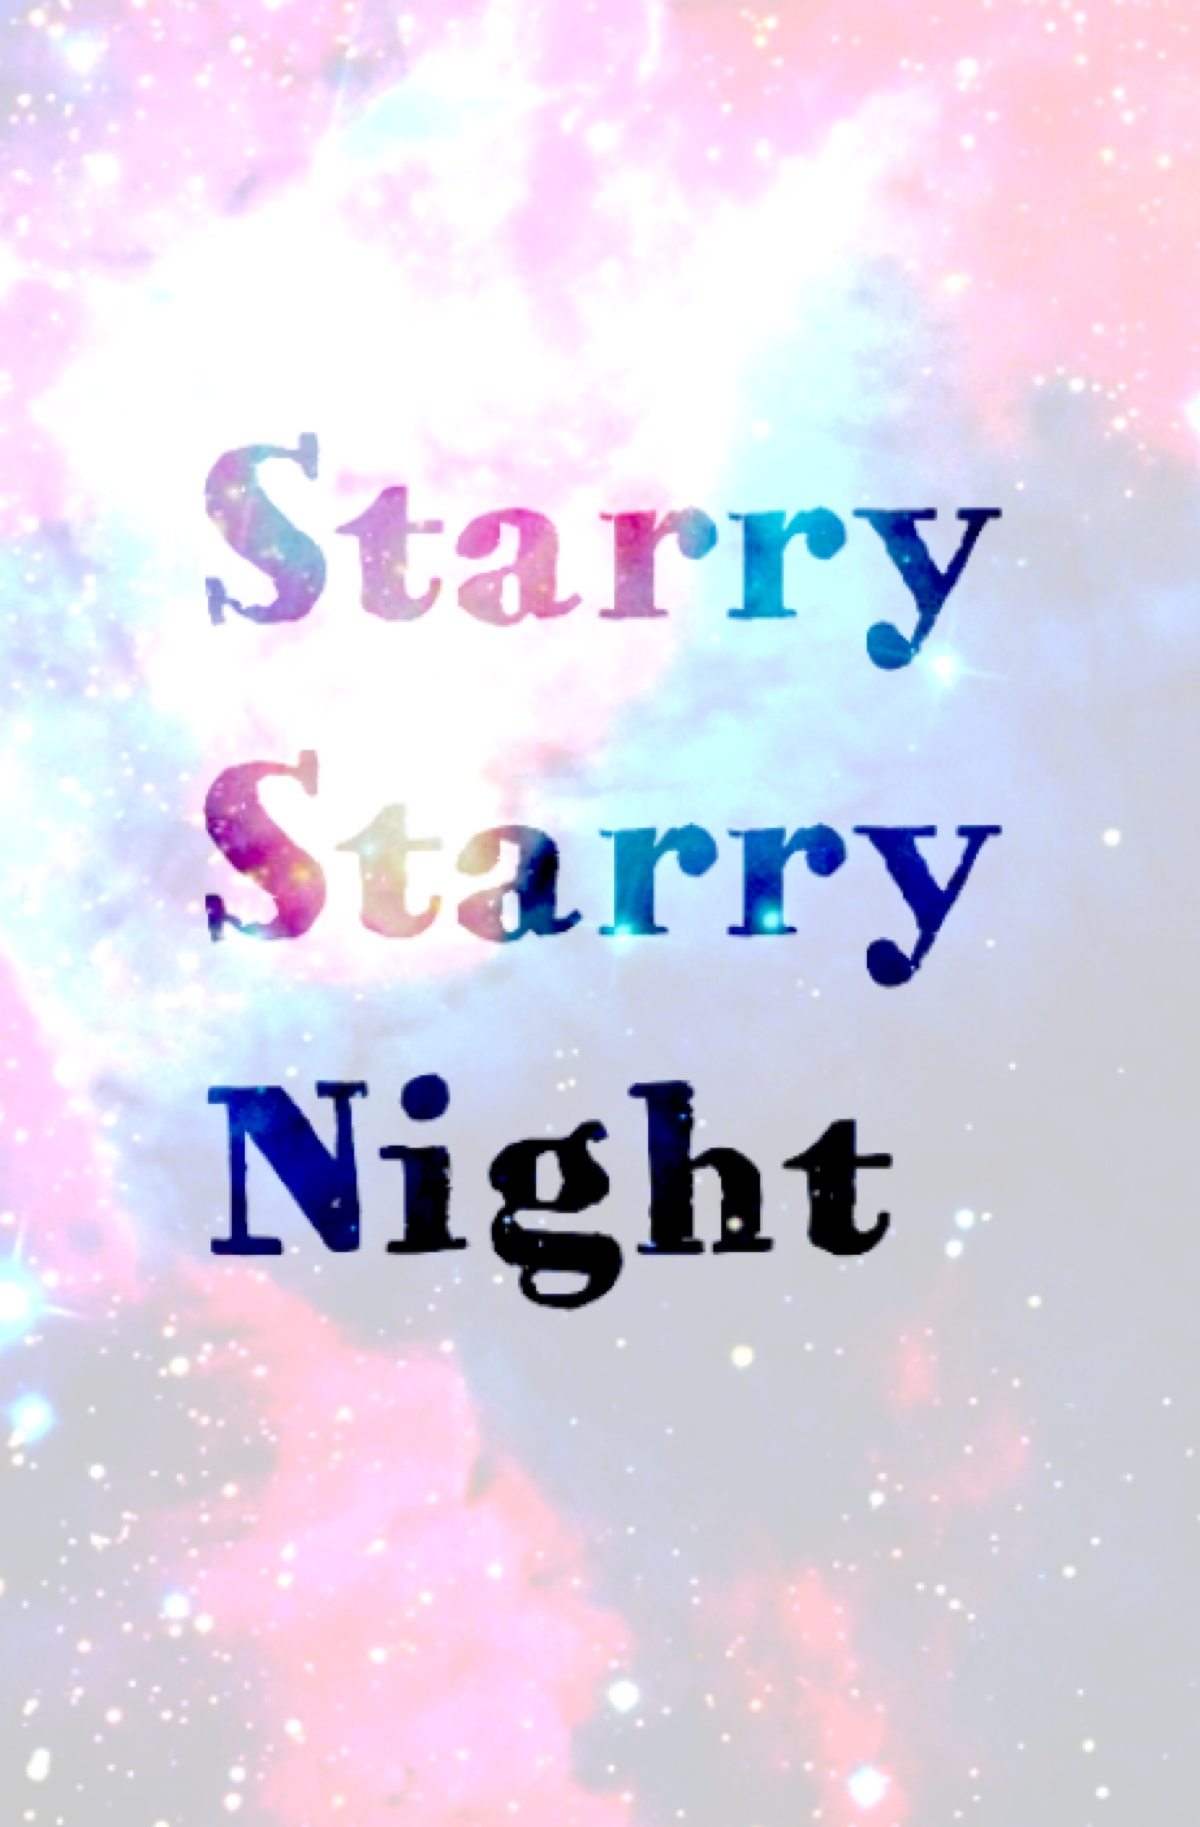 文字句子61星空字61白底61starry starry night